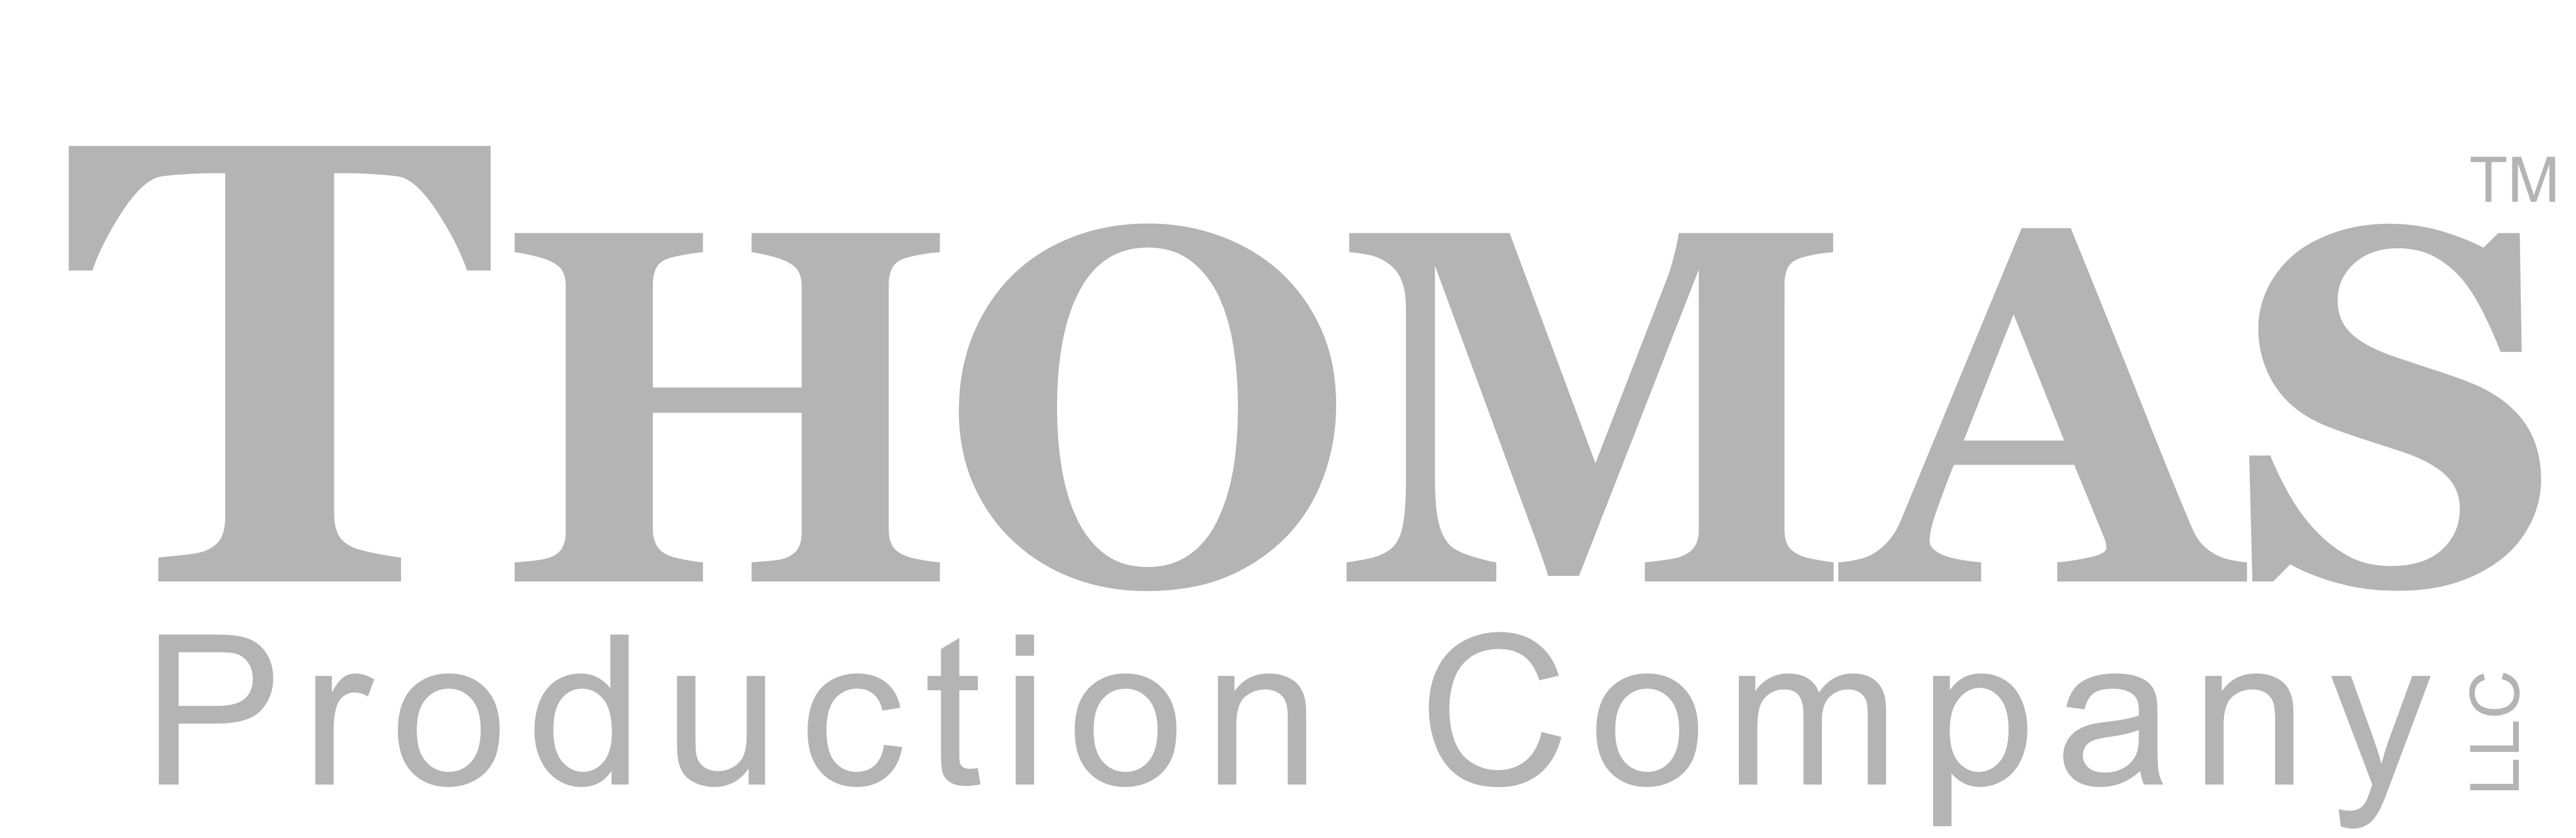 Thomas Production Company logo